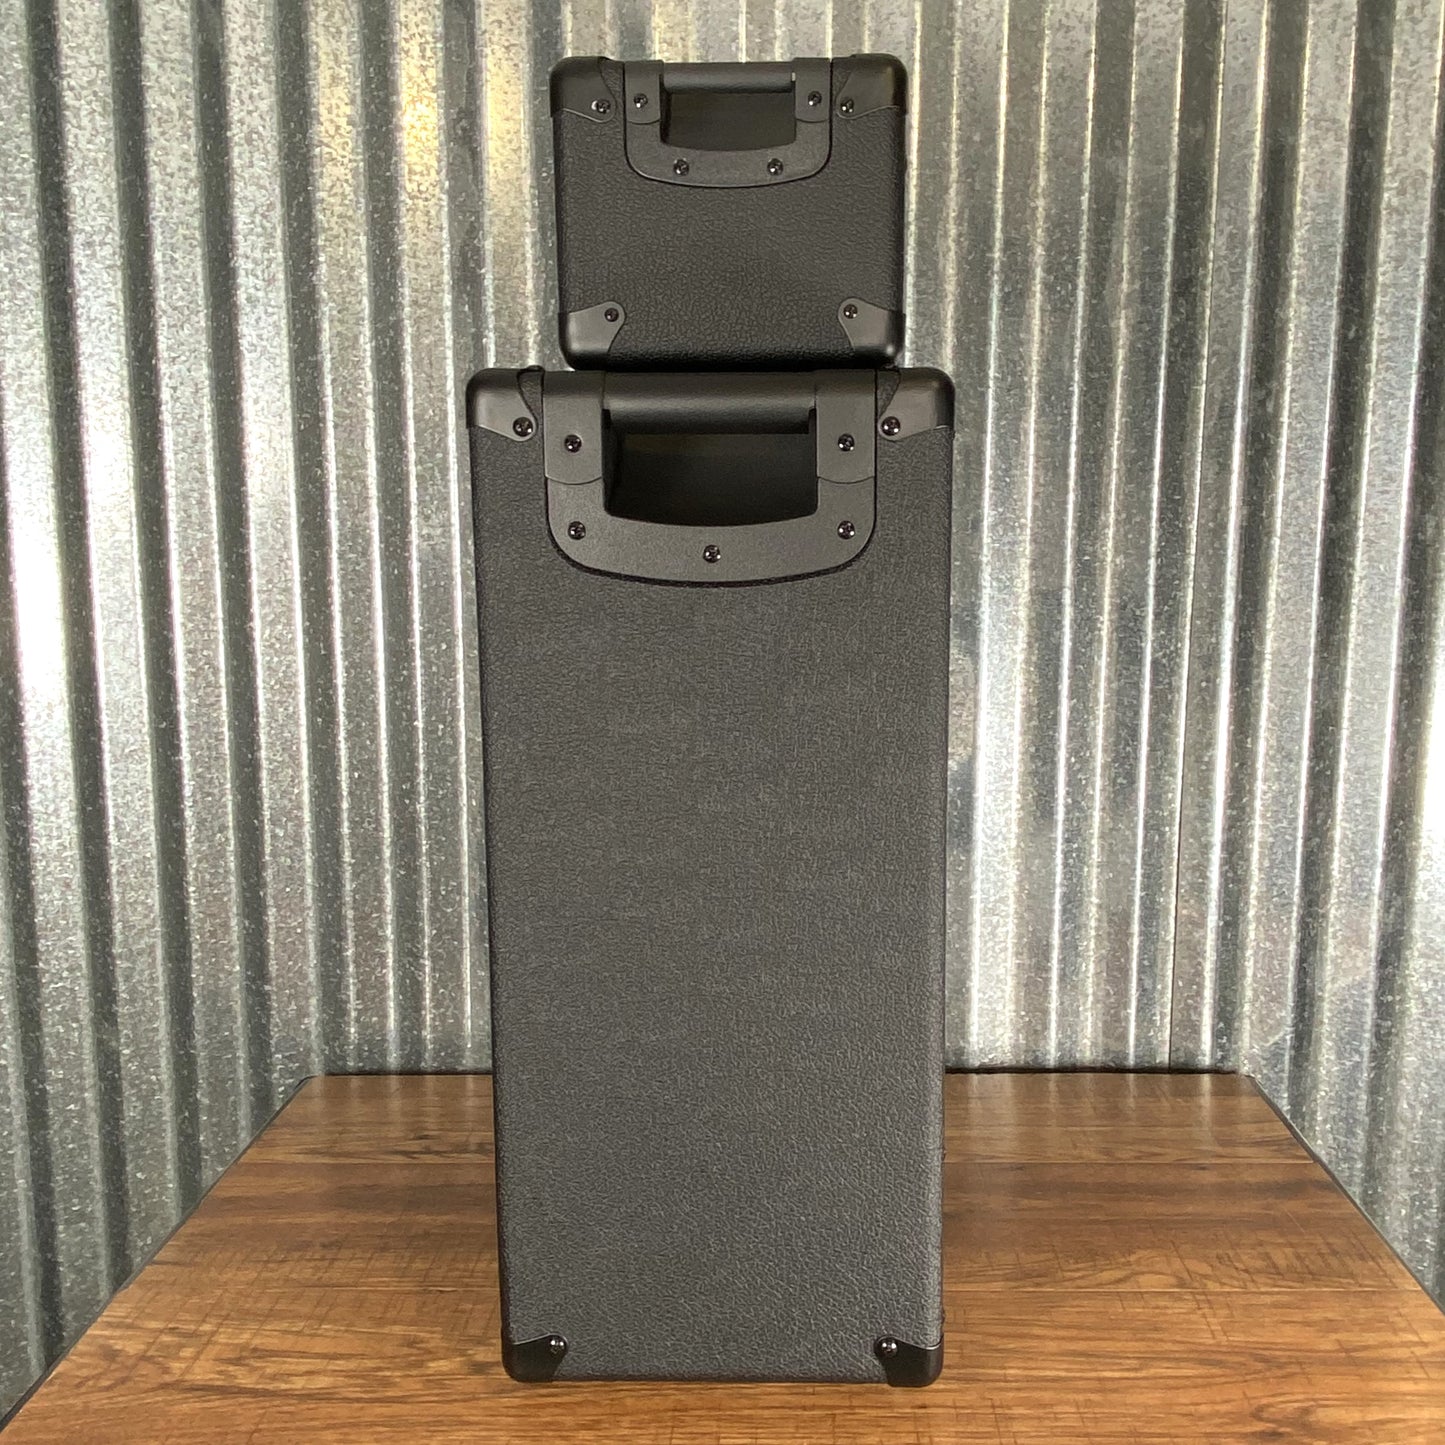 Laney IRF-LEADTOPRIG112 LEADTOP 60 Watt Guitar Amplifier Head & 1x12 Speaker Cabinet Bundle